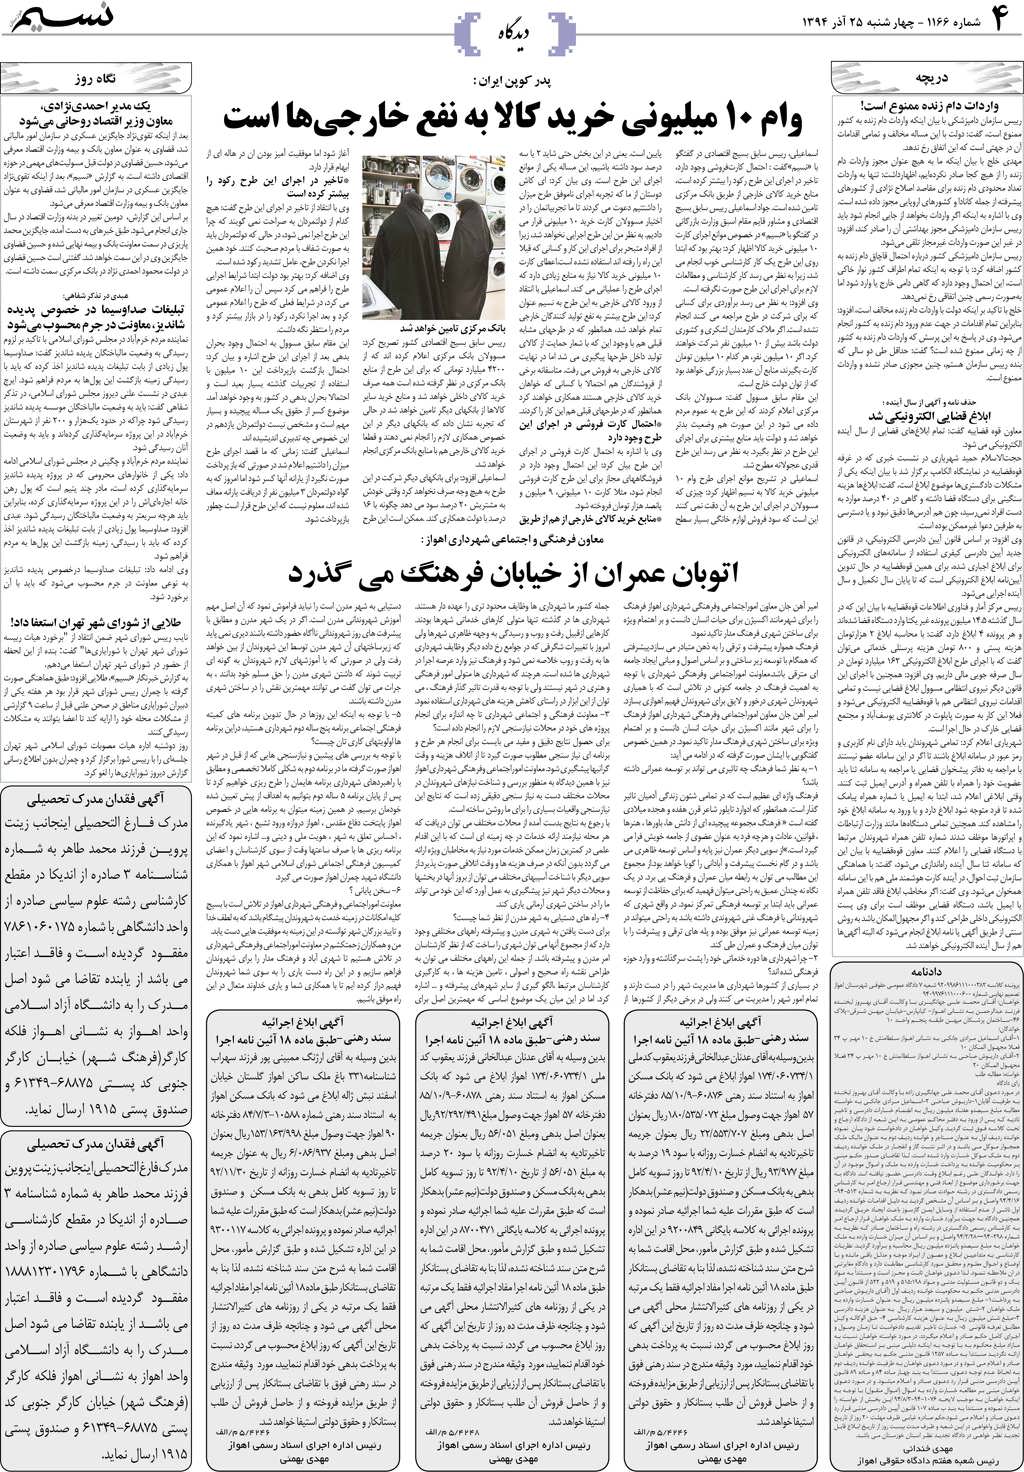 صفحه دیدگاه روزنامه نسیم شماره 1166